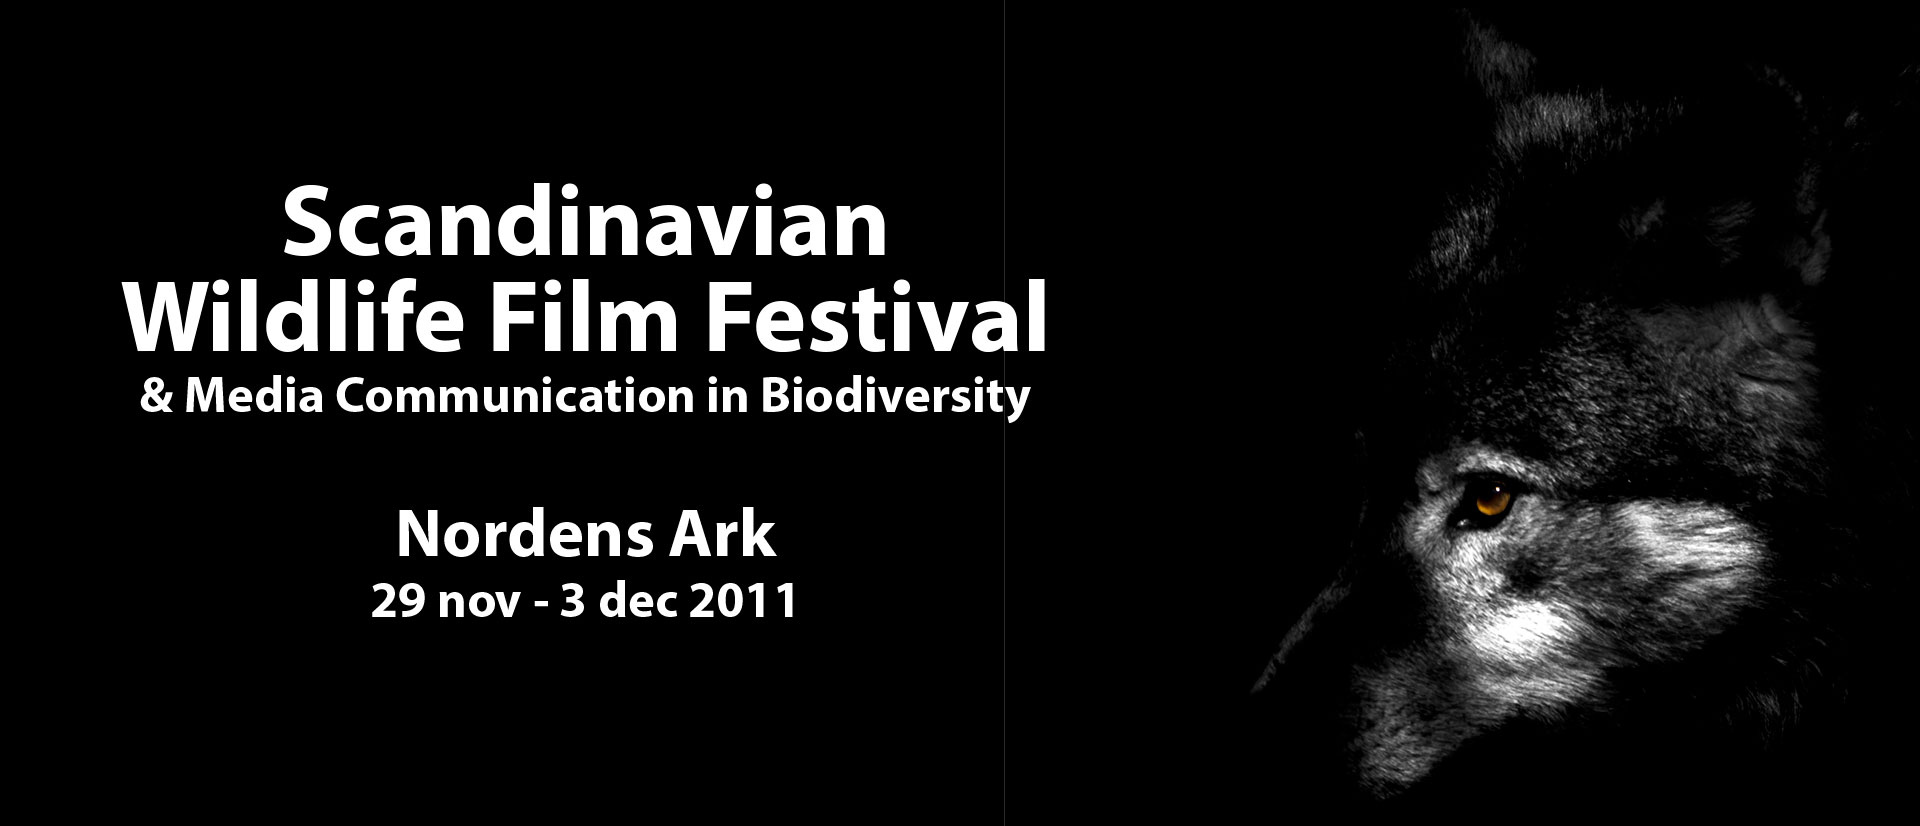 Scandinavian Wildlife Film Festival - Värg, Nordens Ark - fotograf Tom Svensson